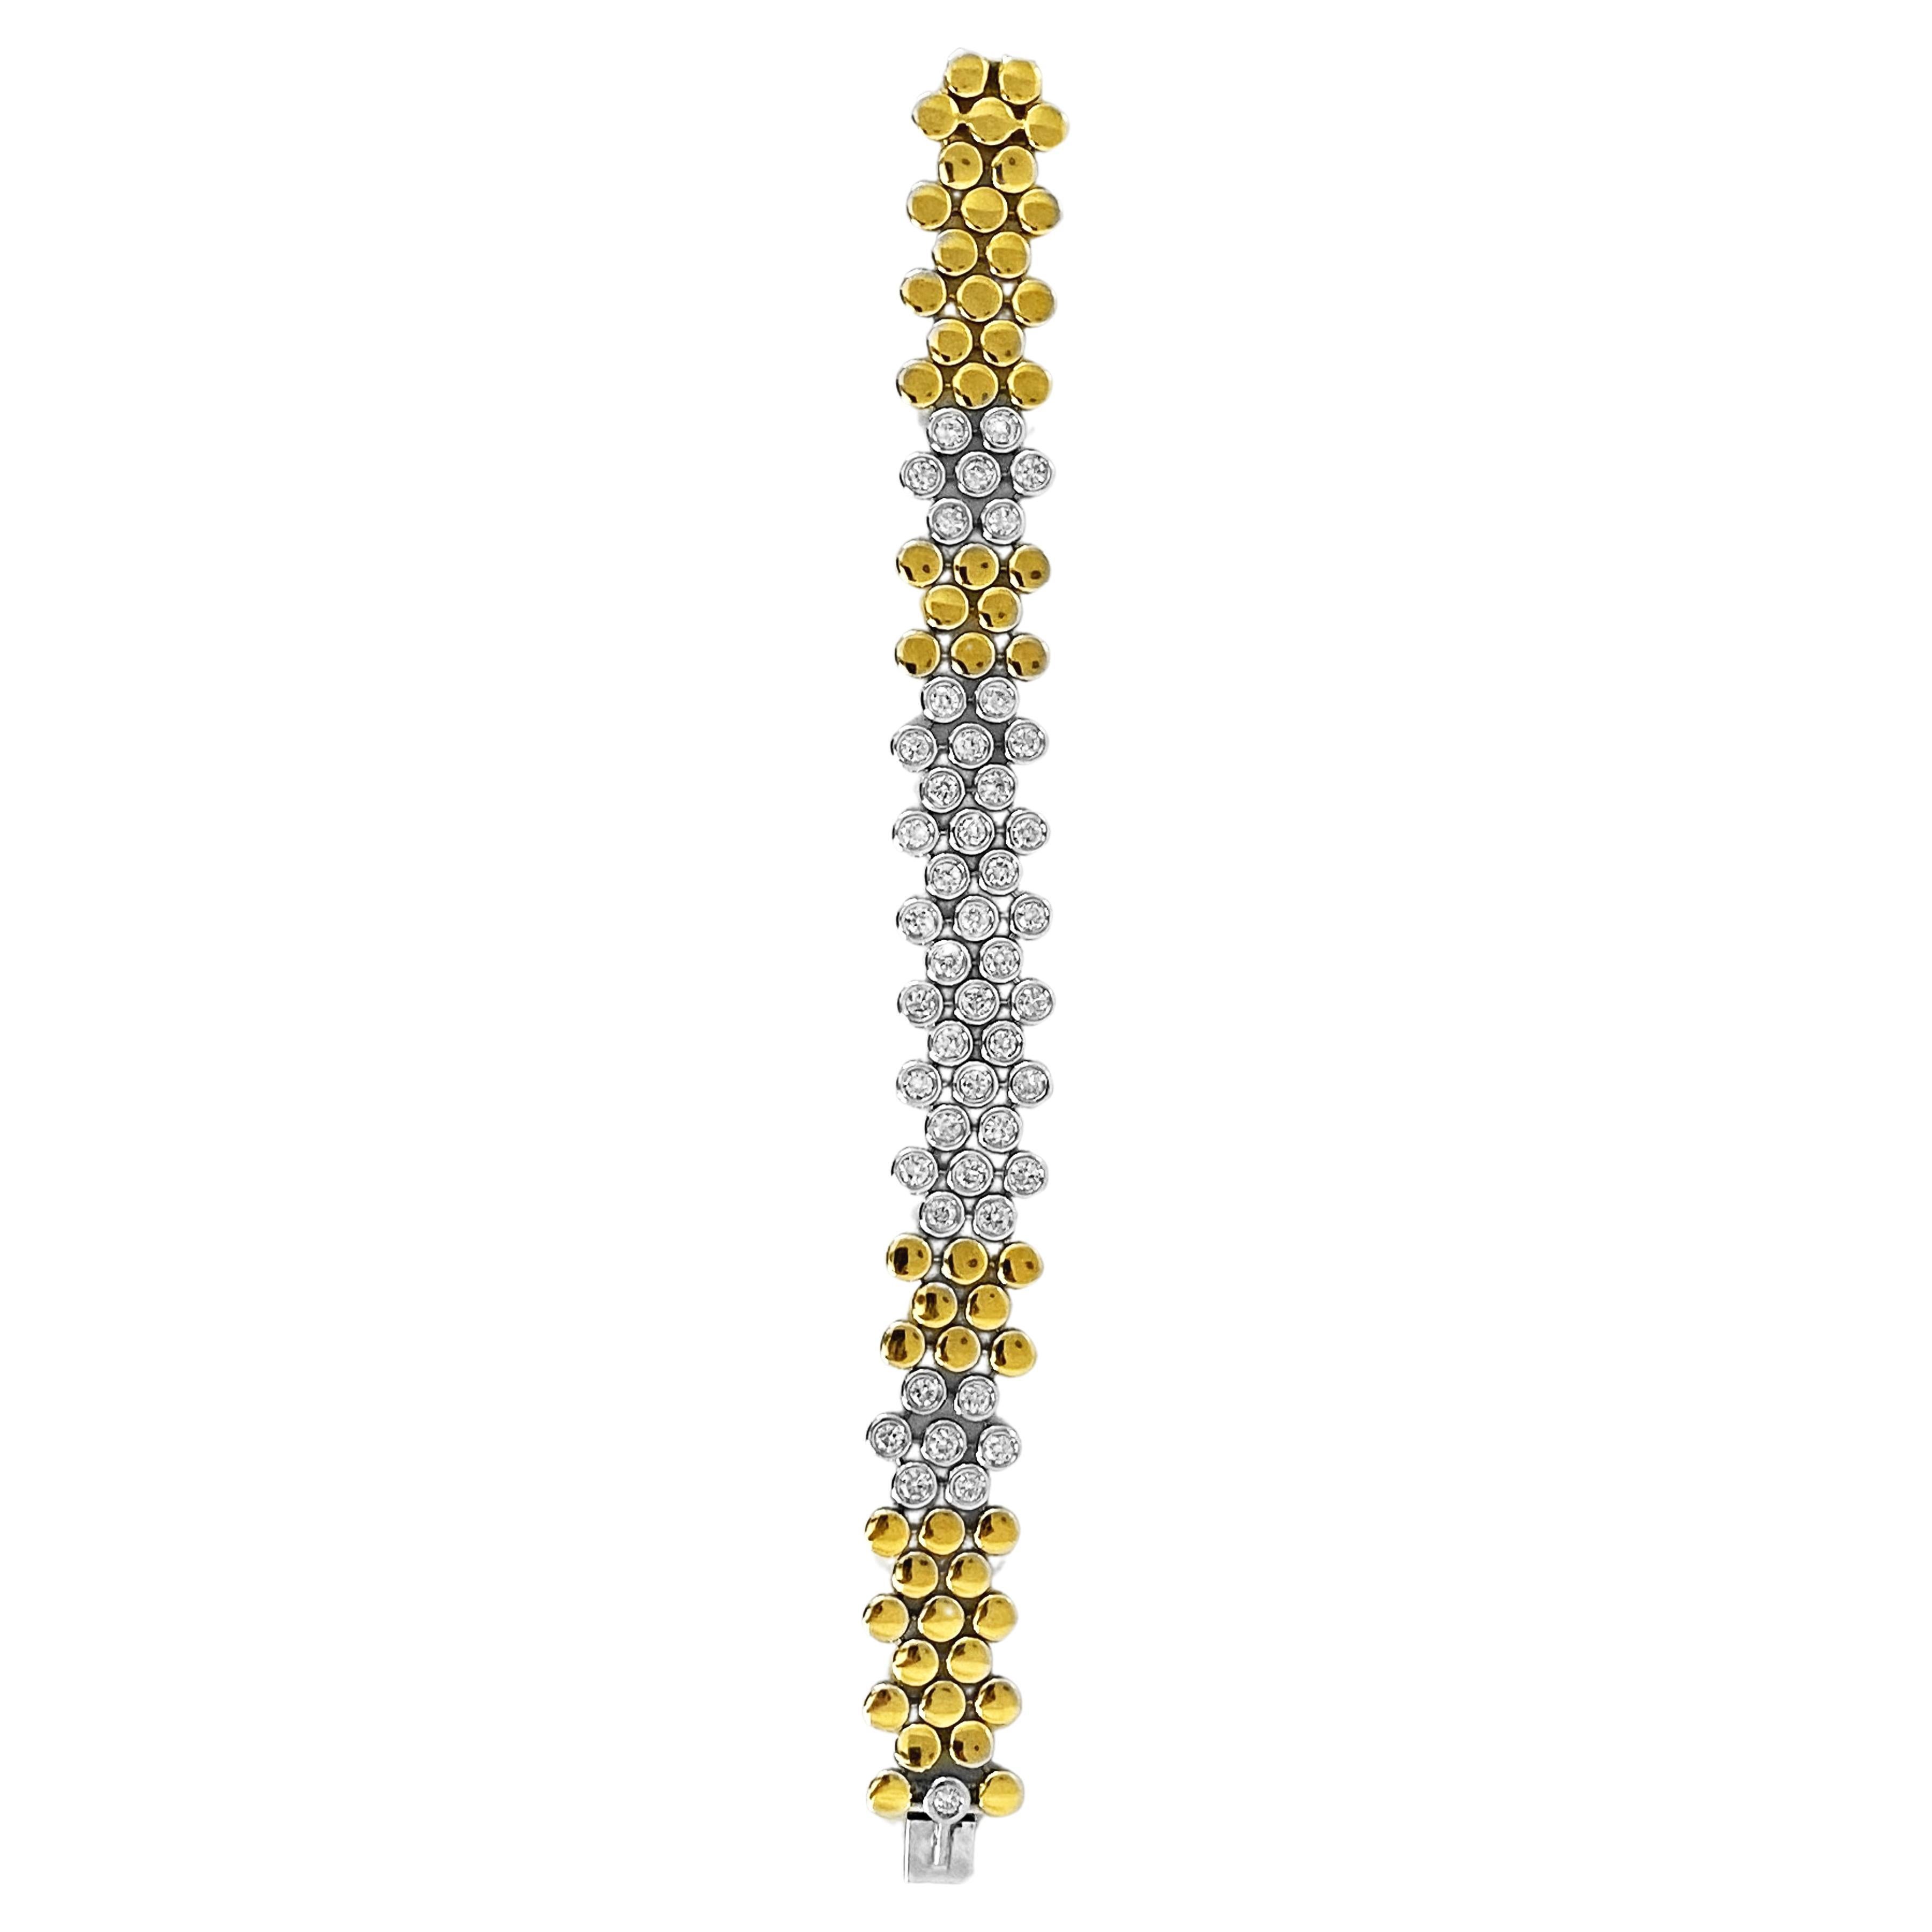 Le bracelet chef-d'œuvre Scavia, qui représente l'incarnation de l'élégance et du luxe, présente un arrangement exquis de diamants blancs taillés en brillant, sertis de manière experte dans des montures en or blanc et en or jaune lustré. Chacun des